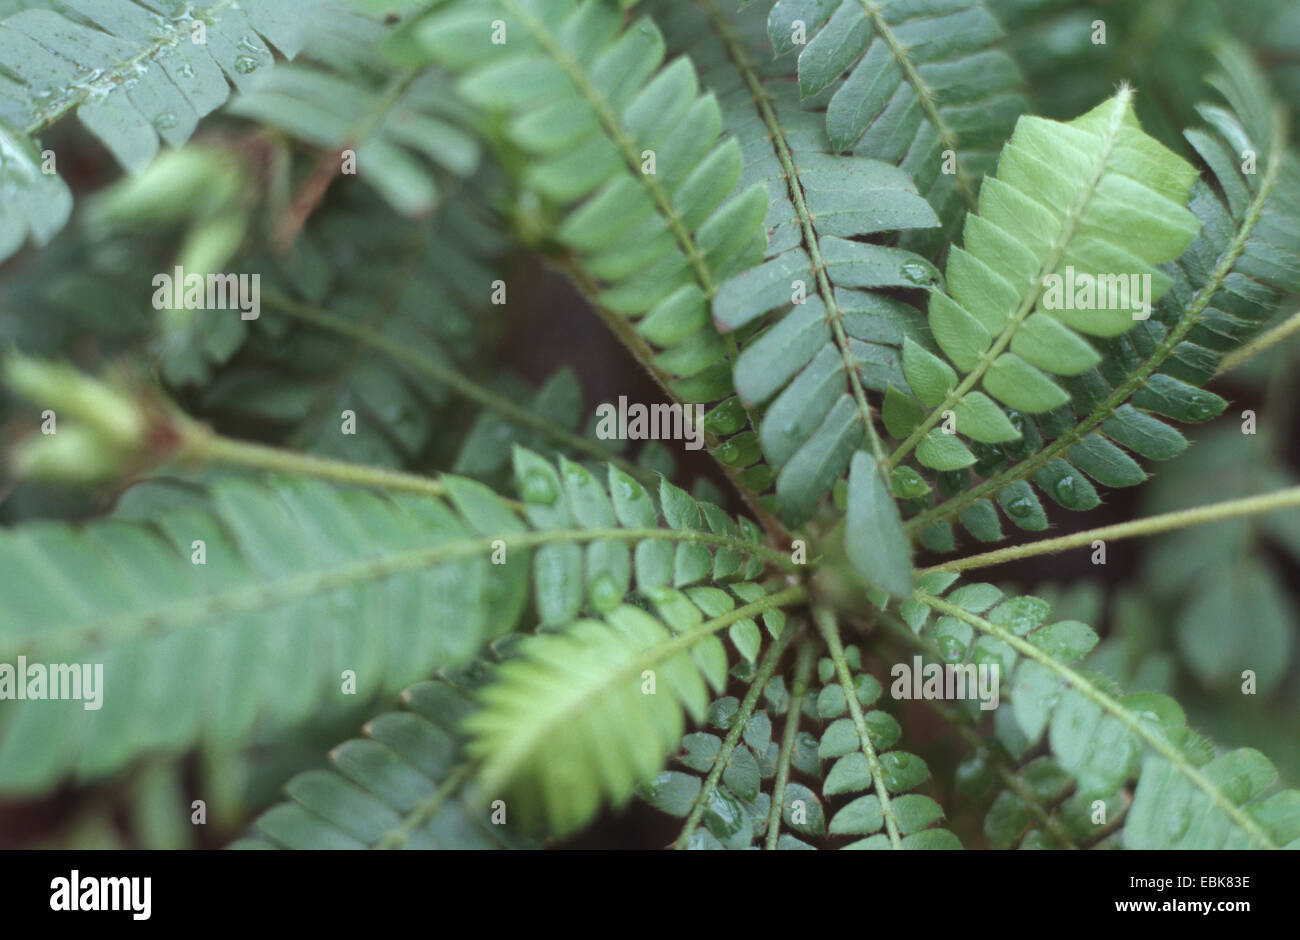 Jamui (Biophytum sensitivum), leaves Stock Photo